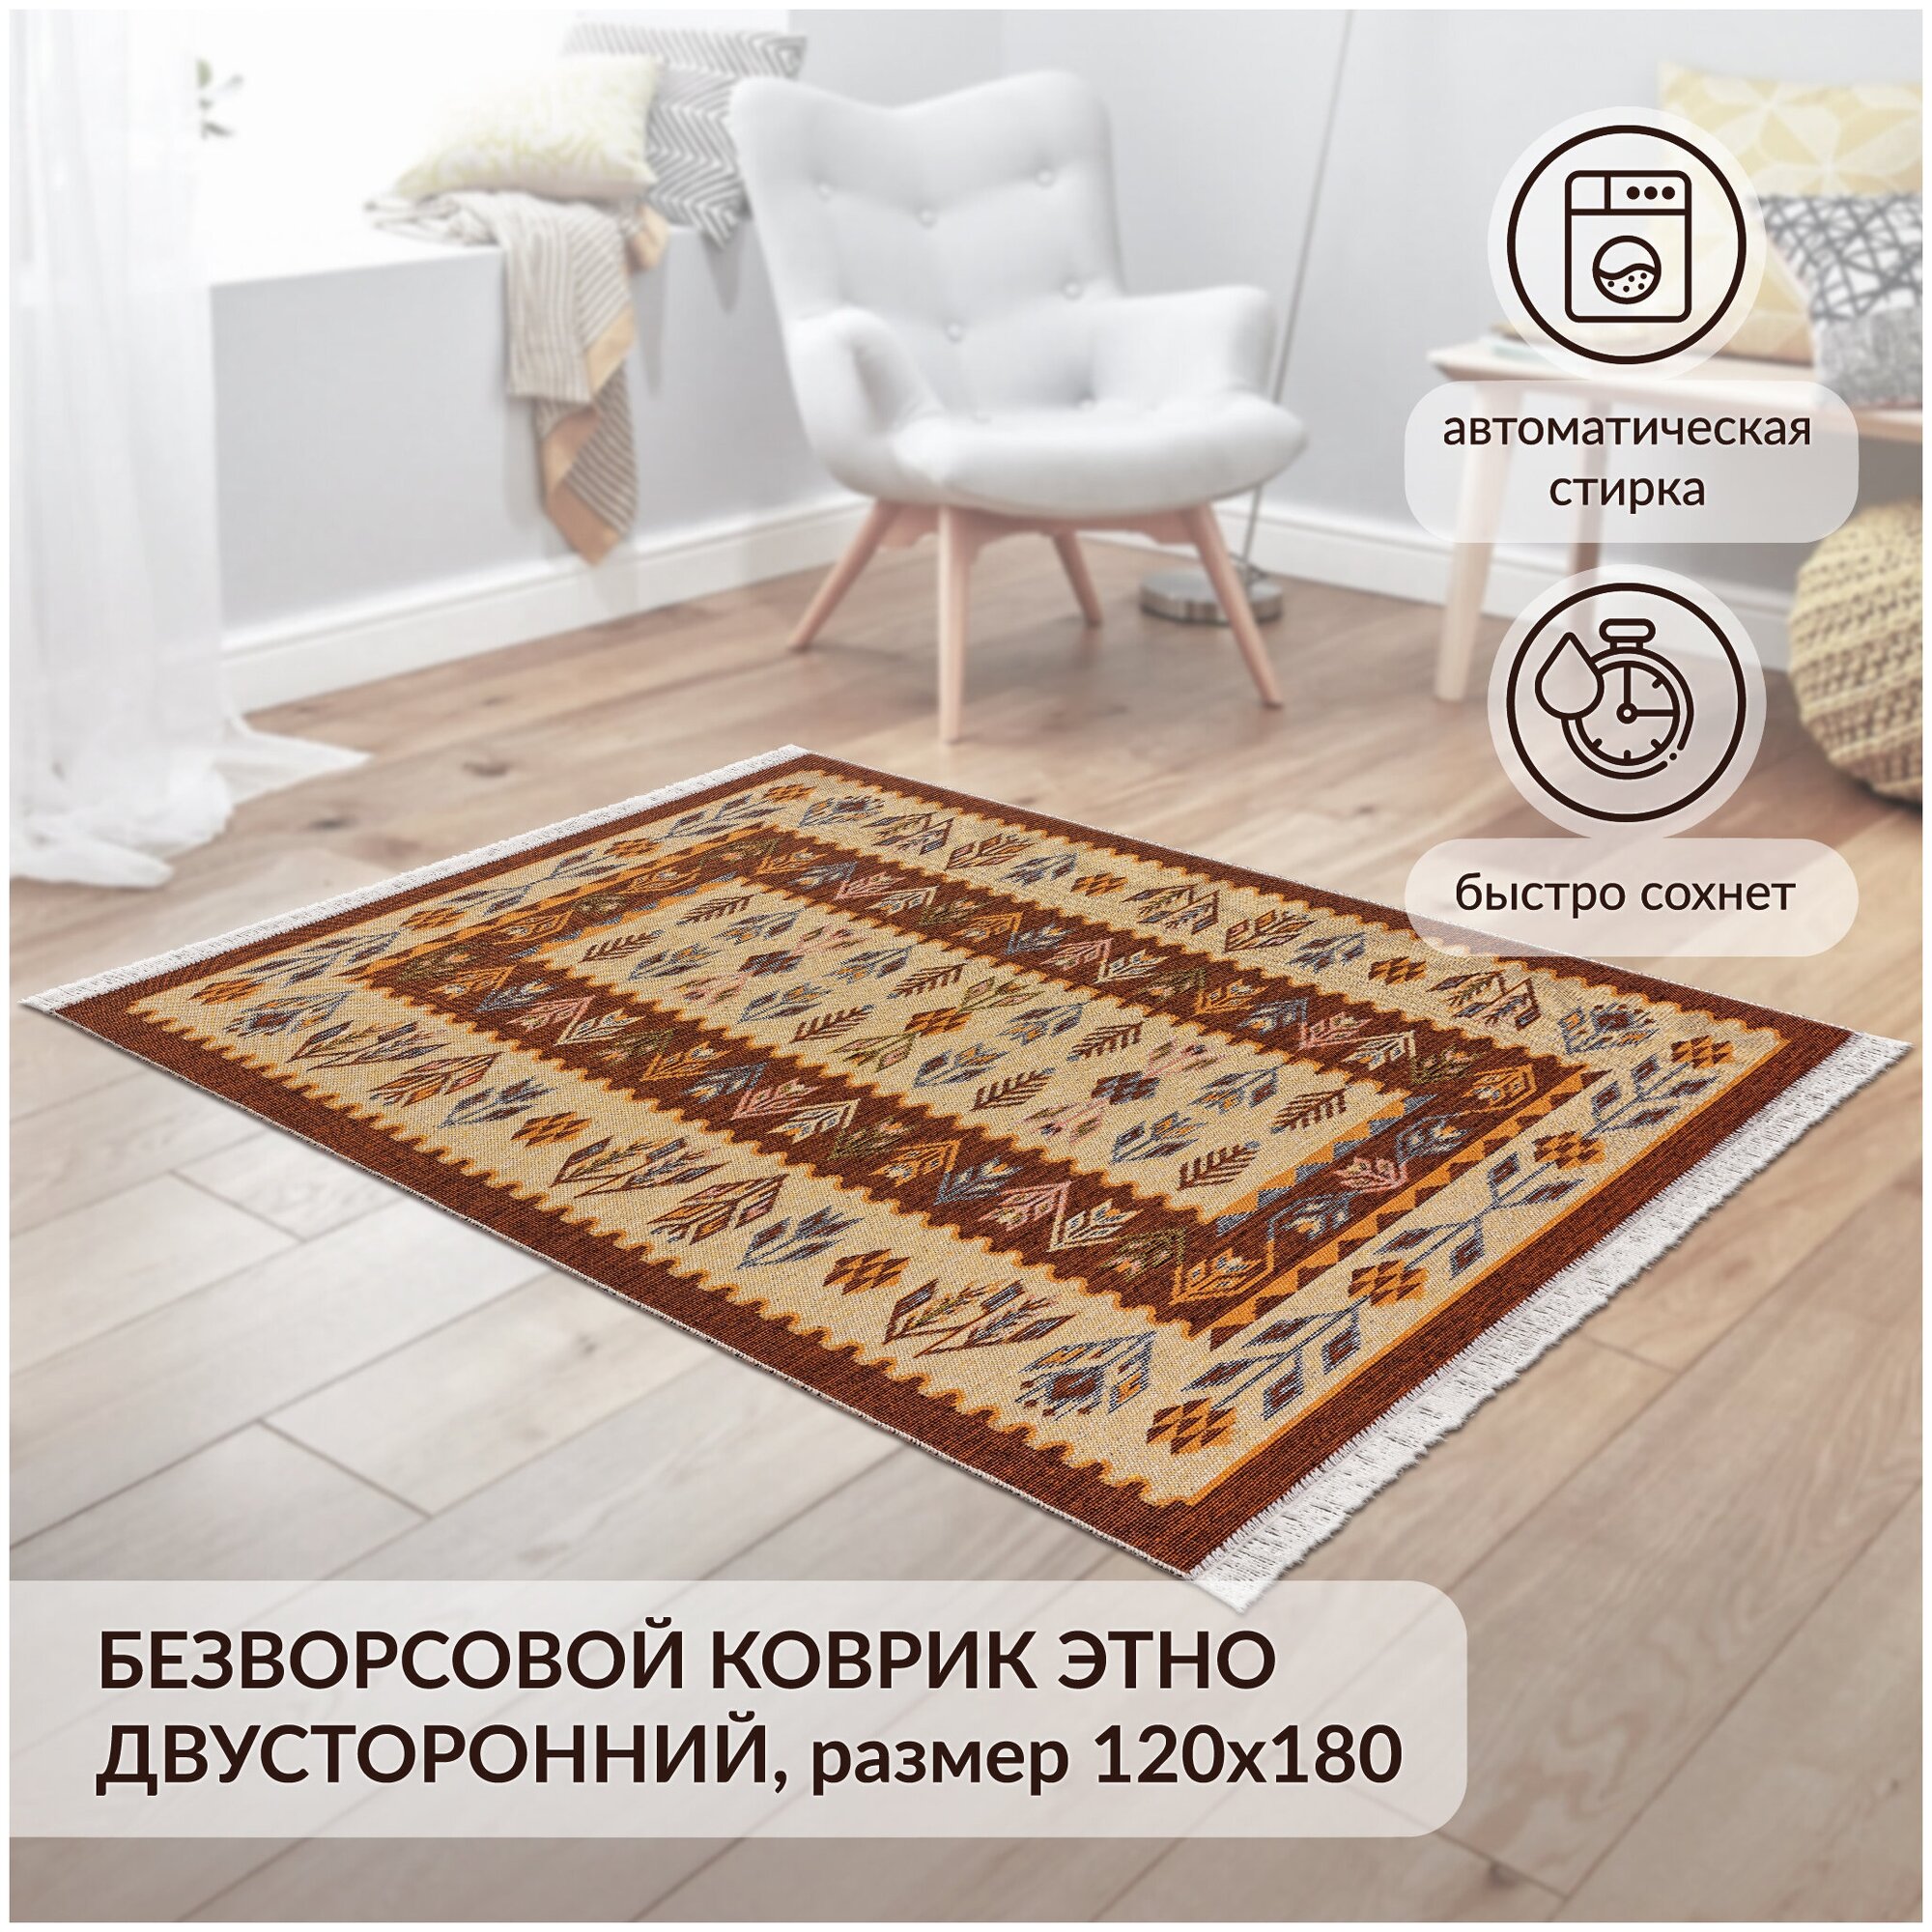 Коврик комнатный хлопковый, безворсовый Icarpet Этно 120х180 янтарь(003)